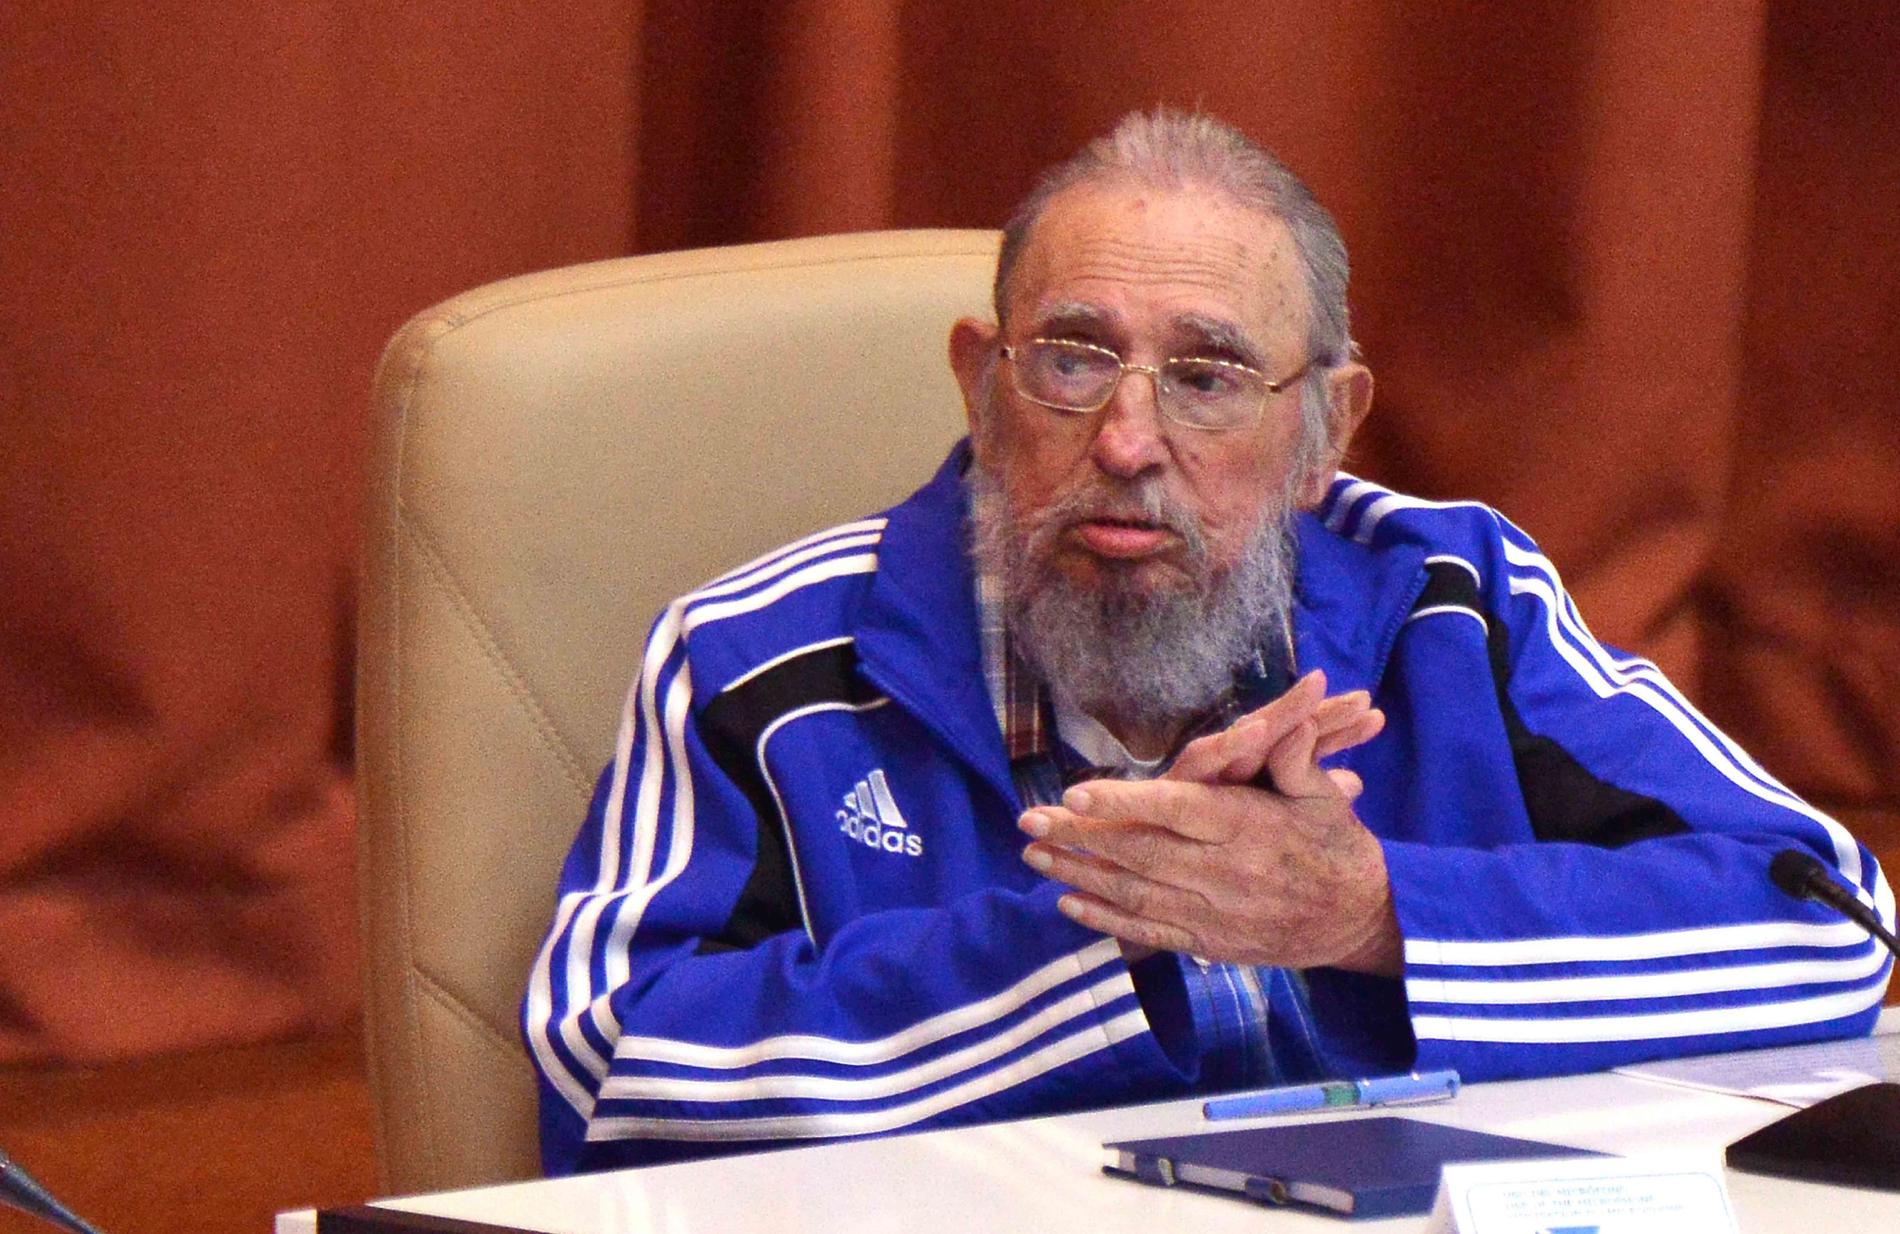 I april i år medverkade han i kommunistpartiets nationella kongress. ”Jag blir snart 90 år. Tiden kommer för oss alla, men de kubanska kommunisternas idéer kommer att bestå”, sa han då.